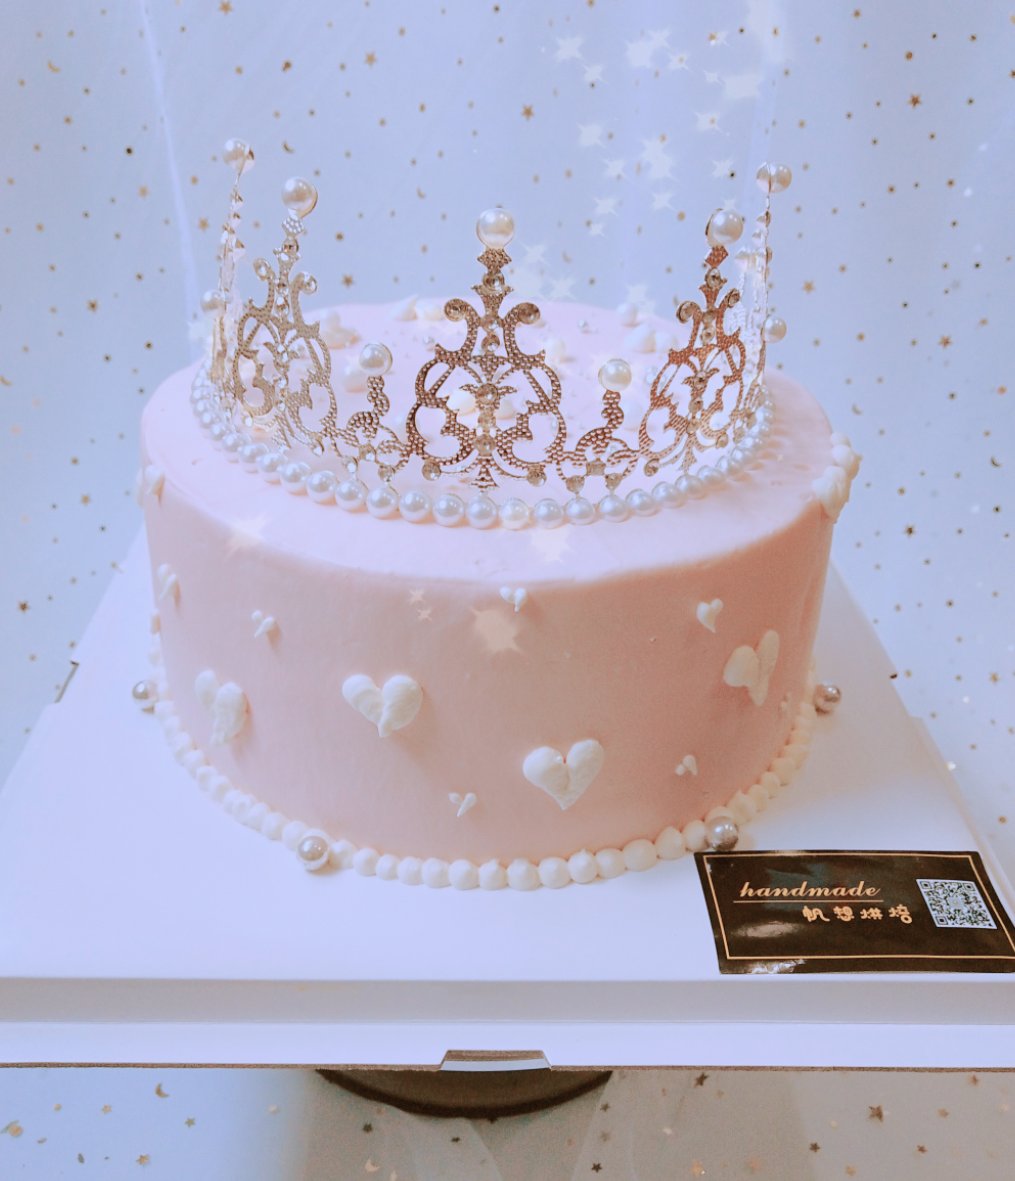 鋆深不知处做的公主皇冠蛋糕